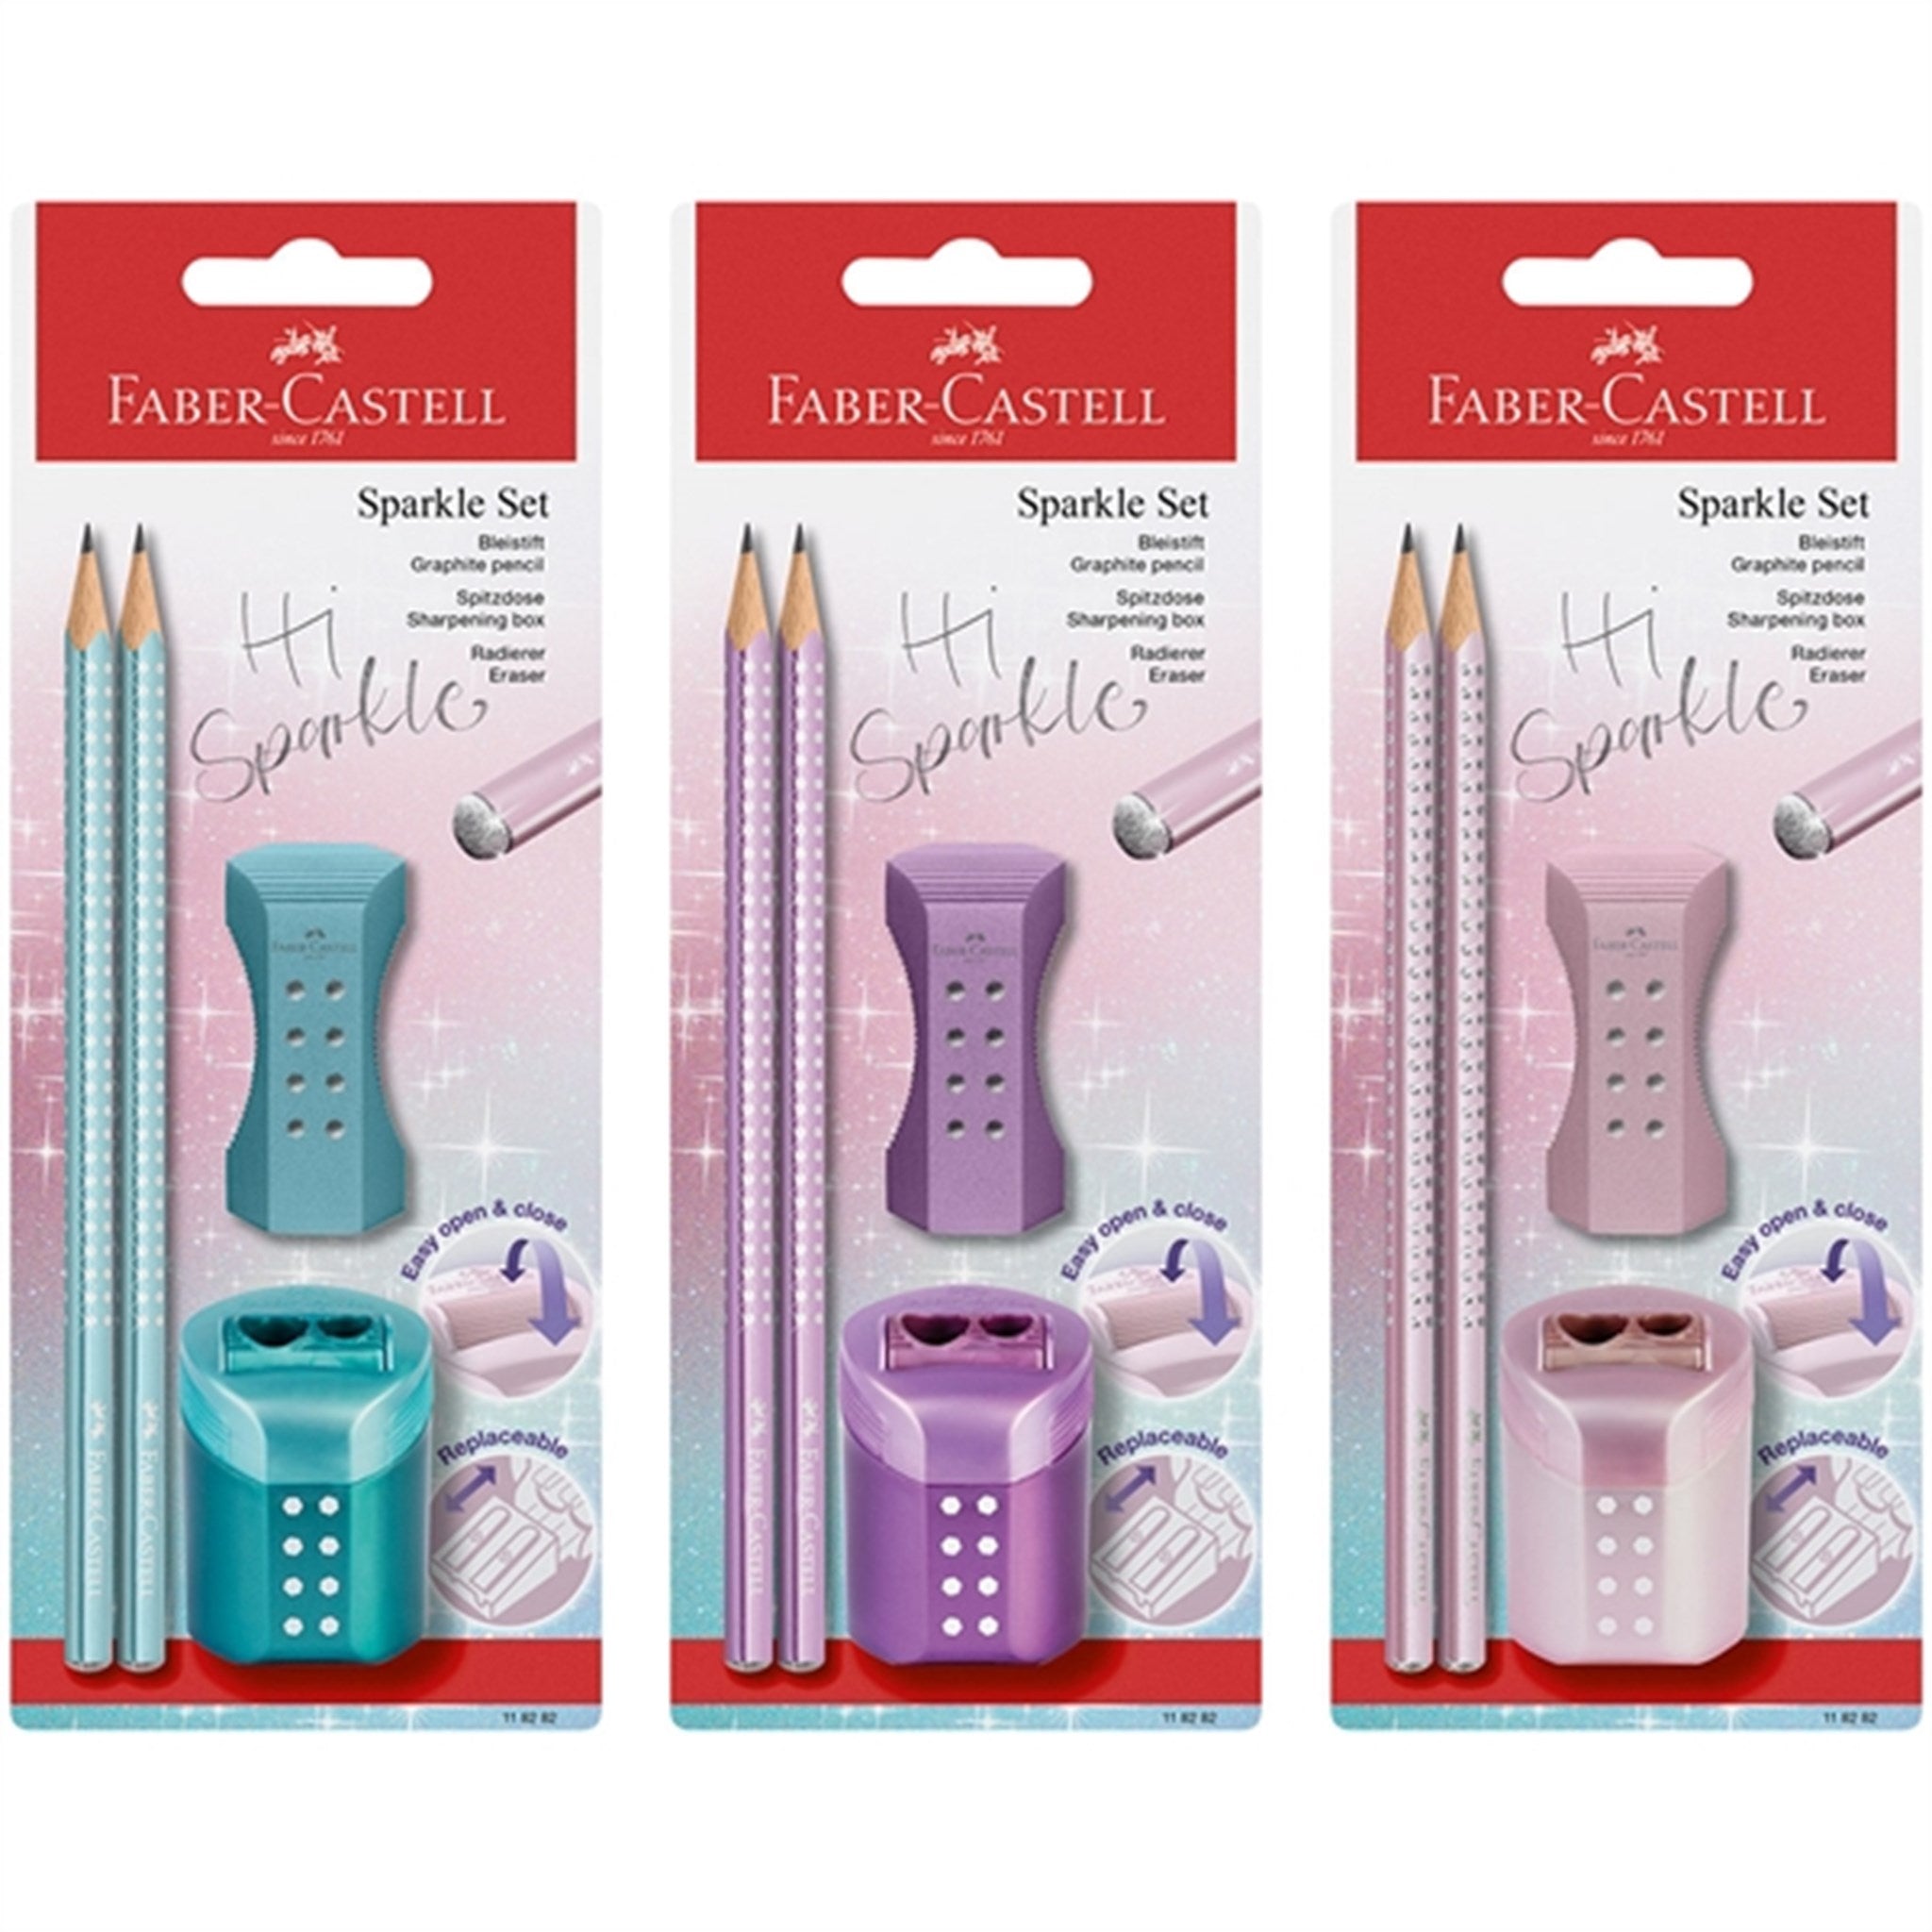 Faber-Castell Sparkle Pencil, Eraser, Pencil Sharpener 2